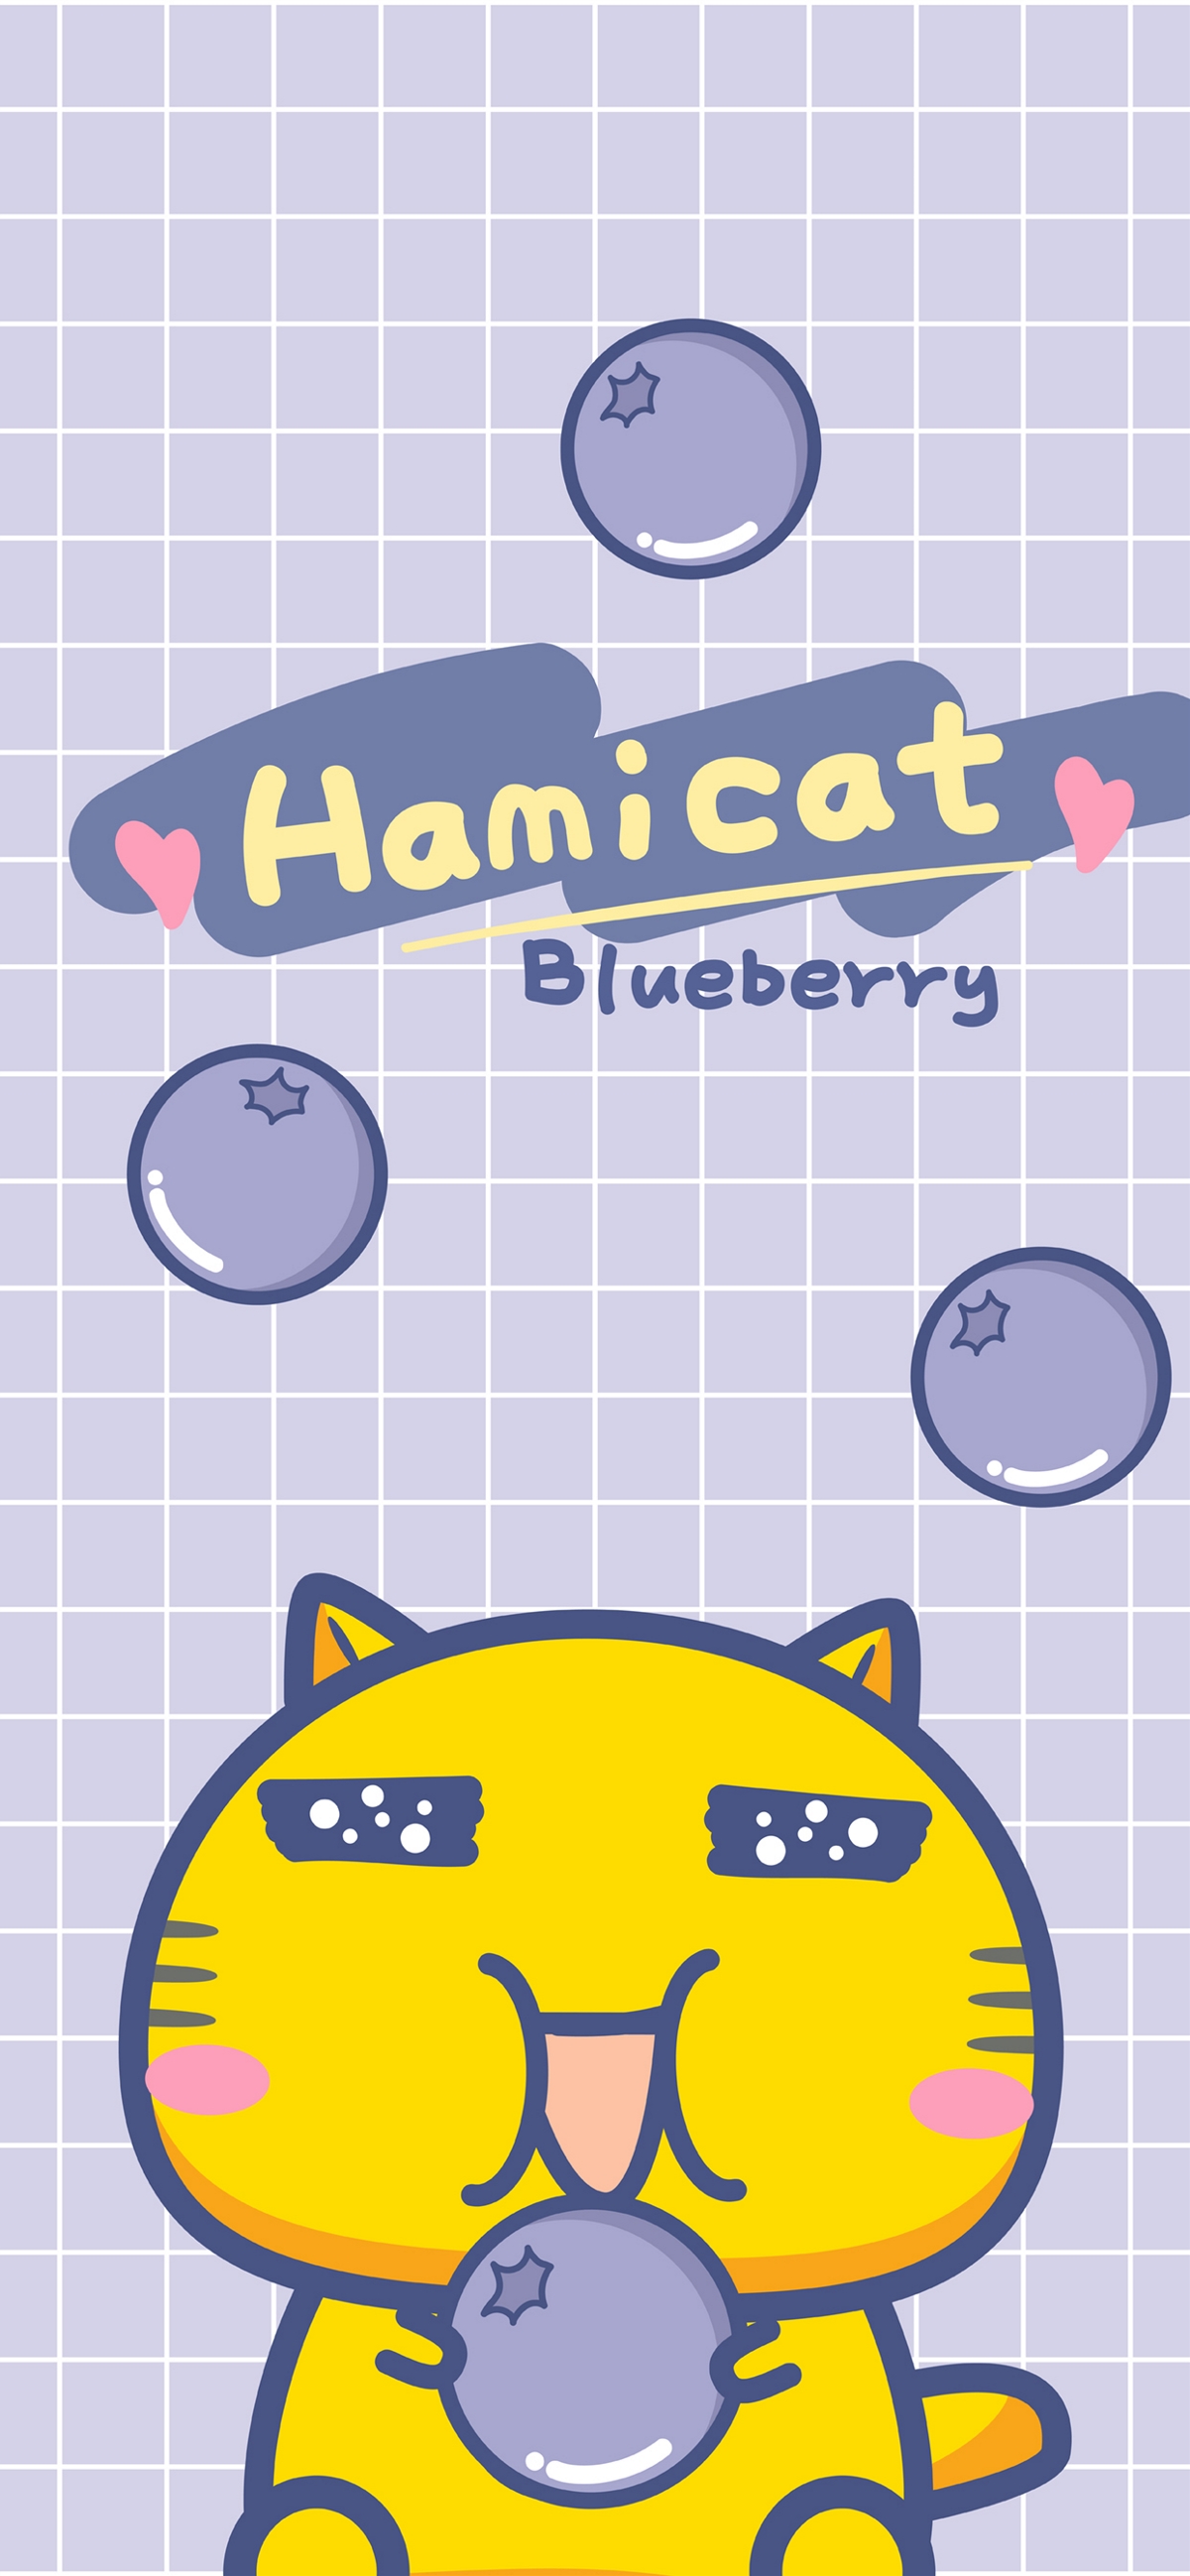 哈咪猫爱蓝莓